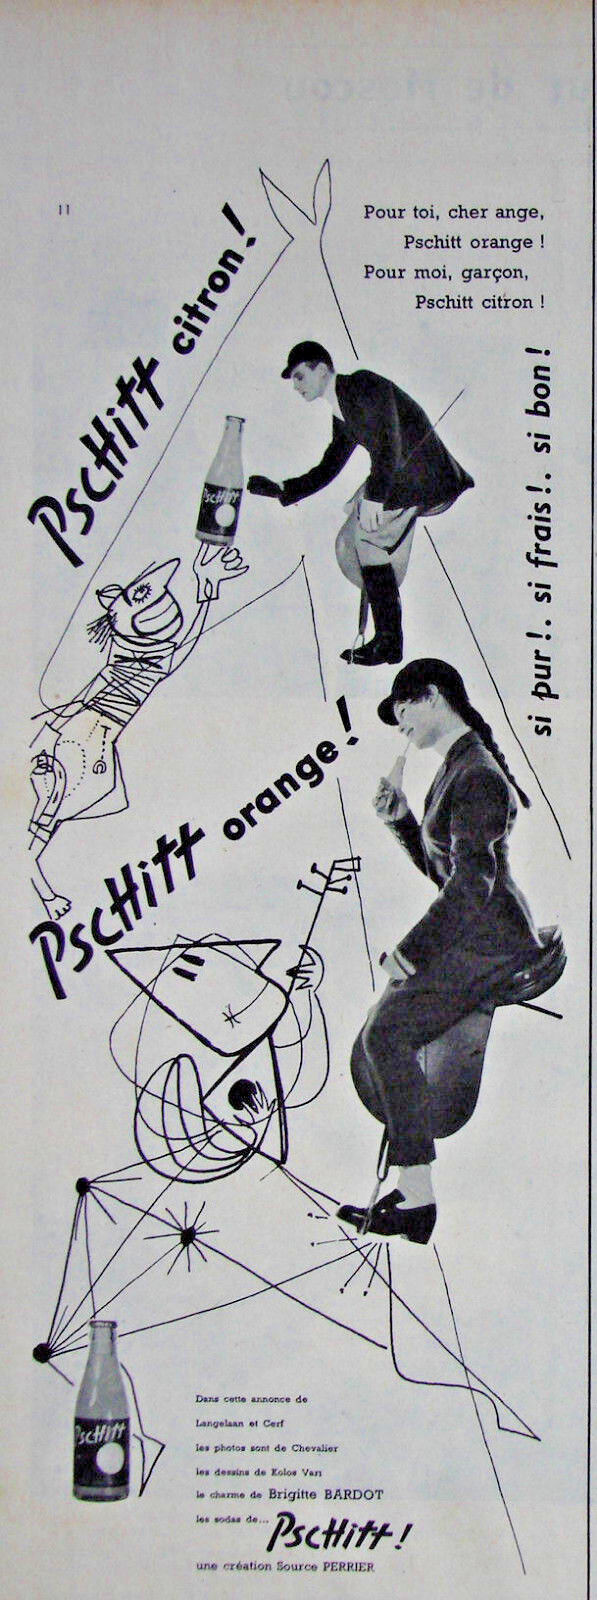 1955 PERRIER PSCHITT PRESS ADVERTISEMENT LEMON OR ORANGE - BRIGITTE BARDOT